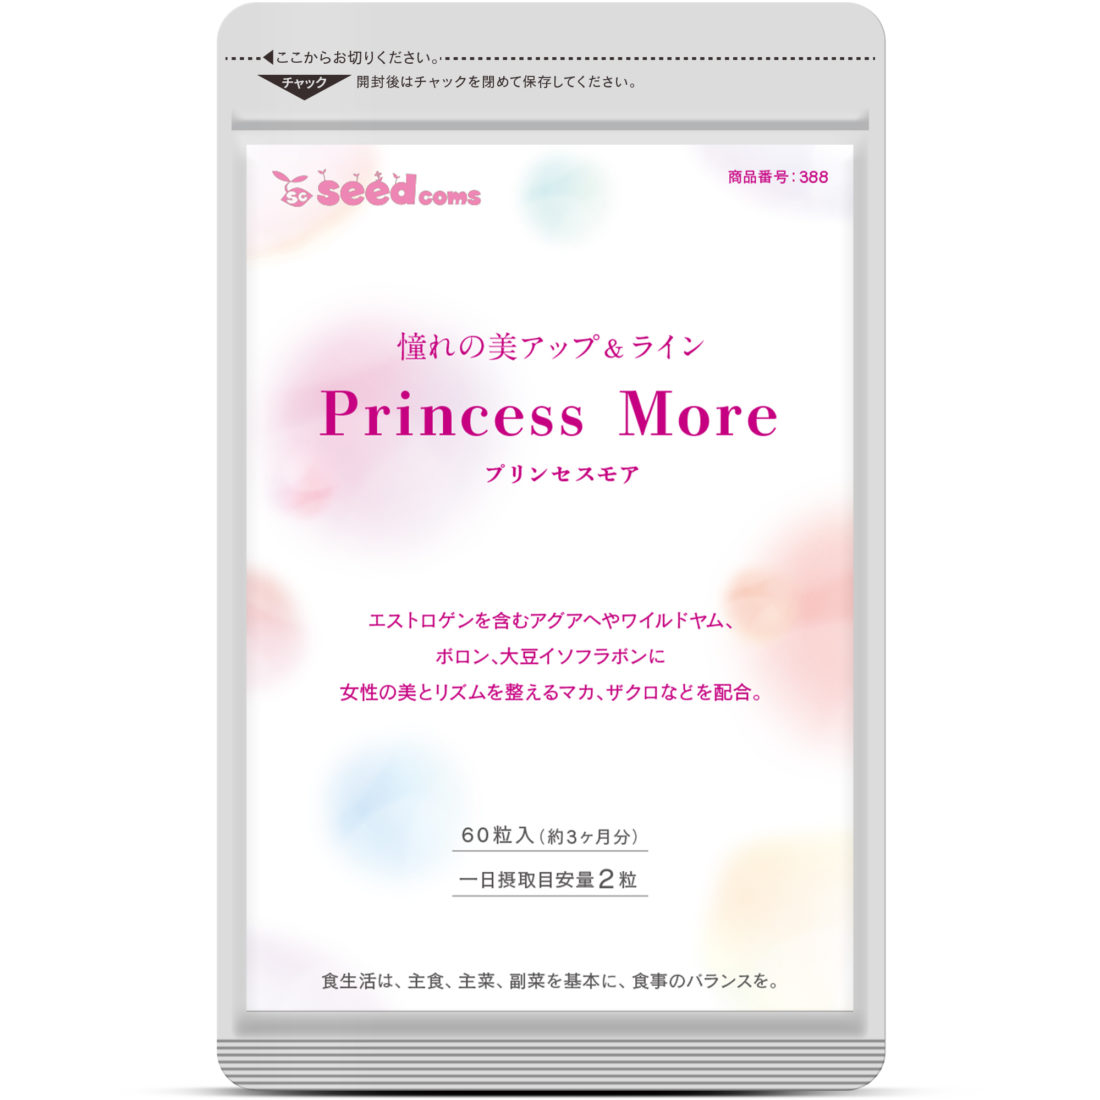 プリンセスモア サプリメント専門店【シードコムス】サービスサイト